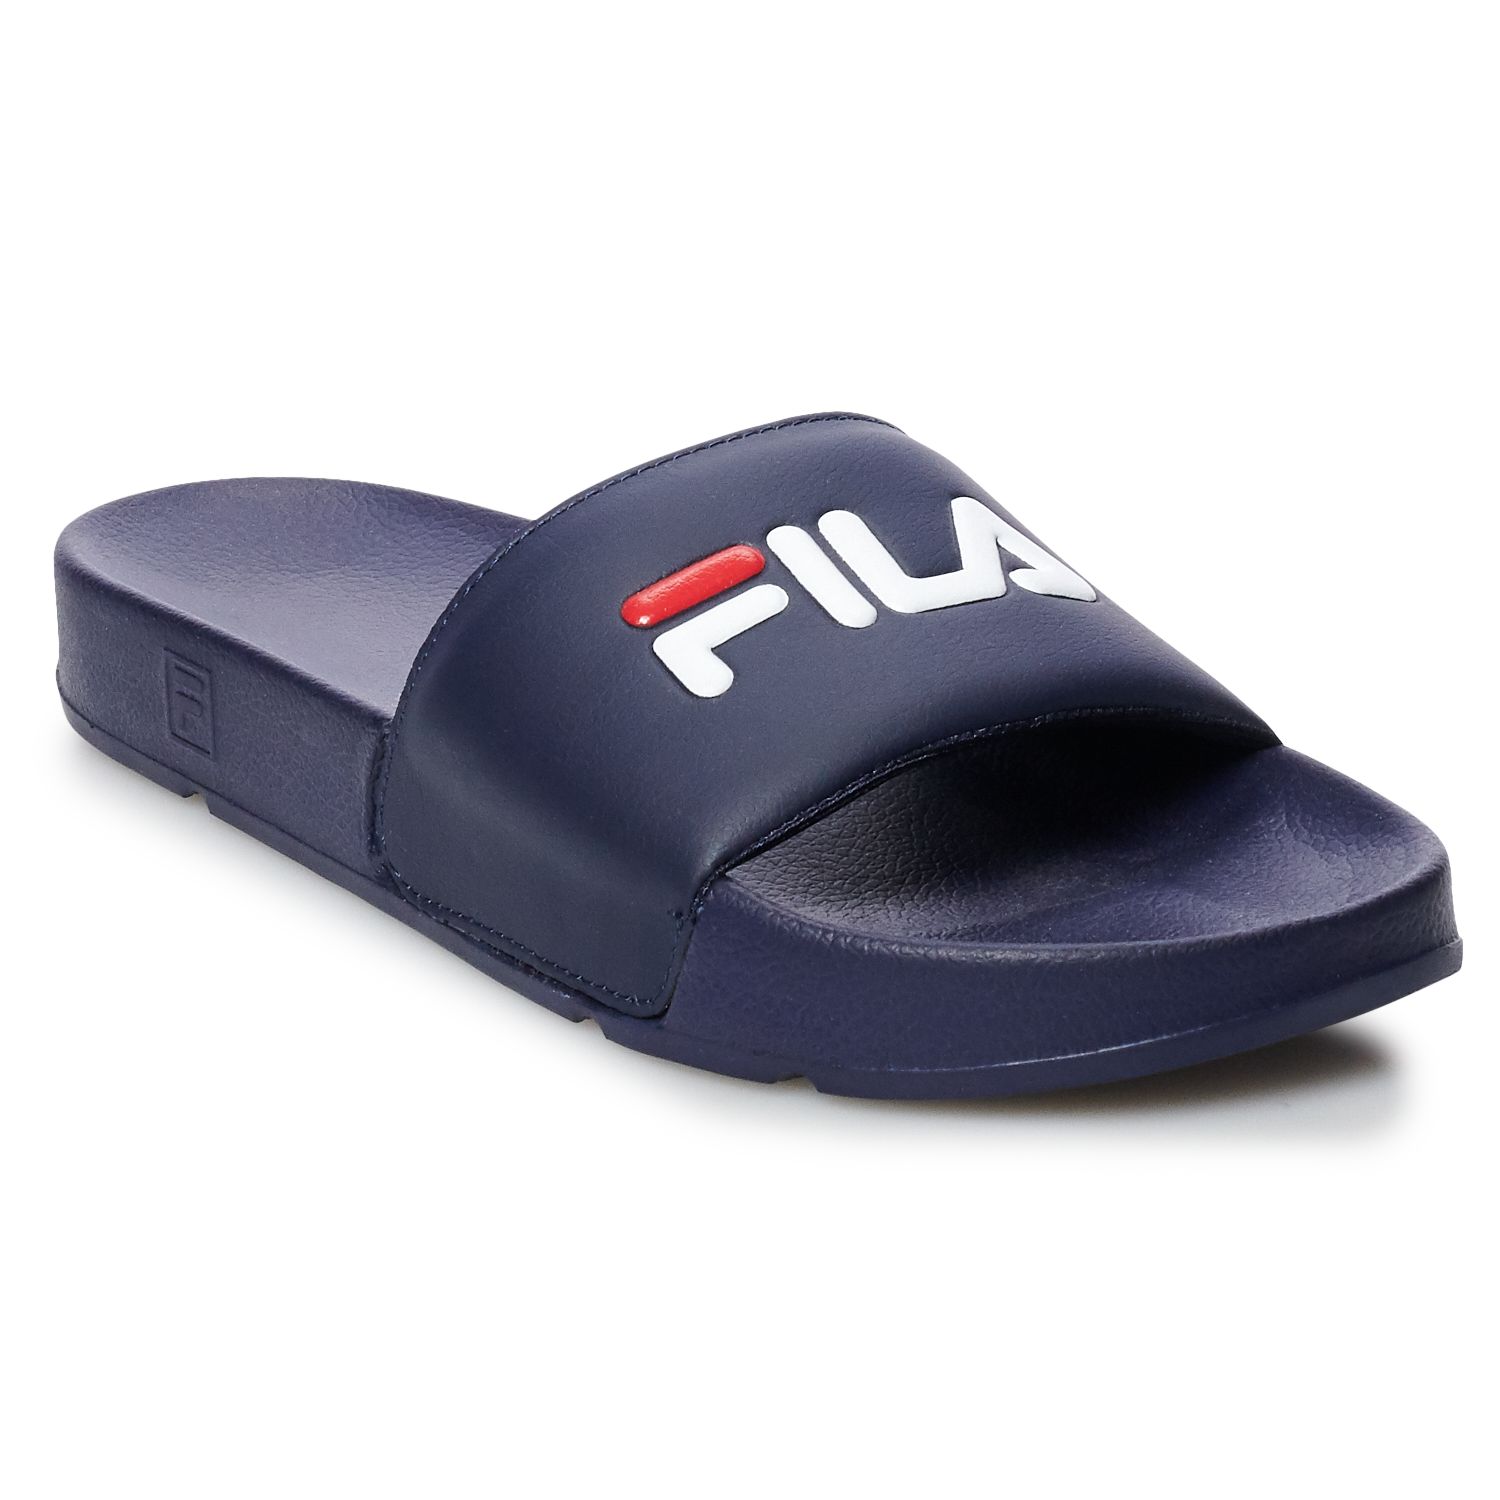 fila men's slide sandals